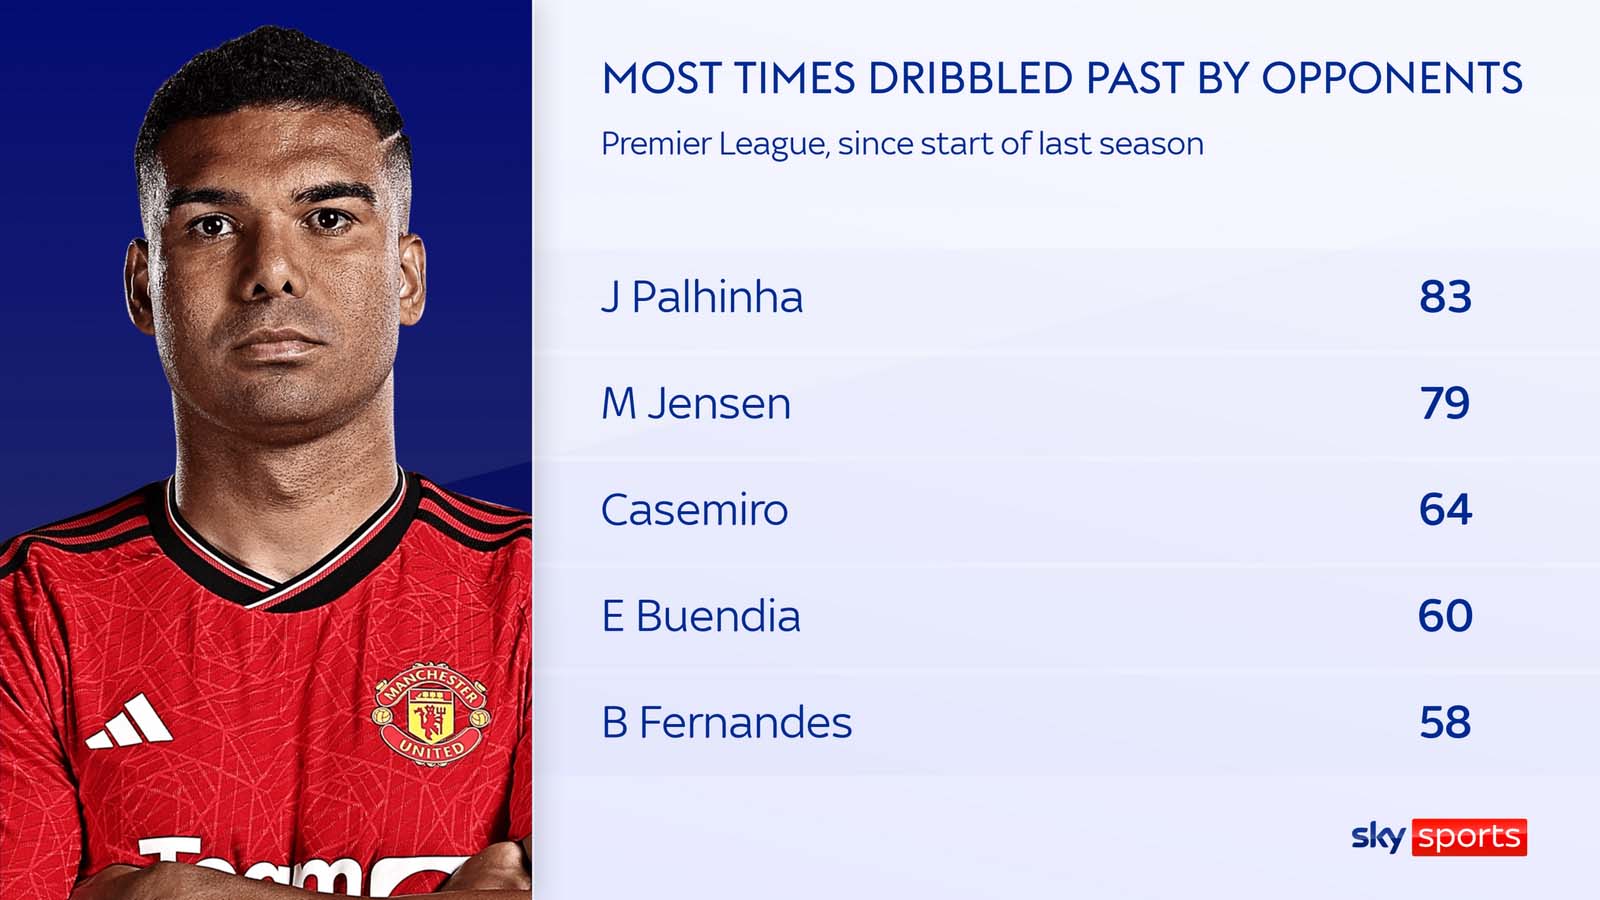 Casemiro xếp thứ 3 trong danh sách những cầu thủ bị qua mặt nhiều nhất từ đầu mùa. Ảnh: Sky Sports